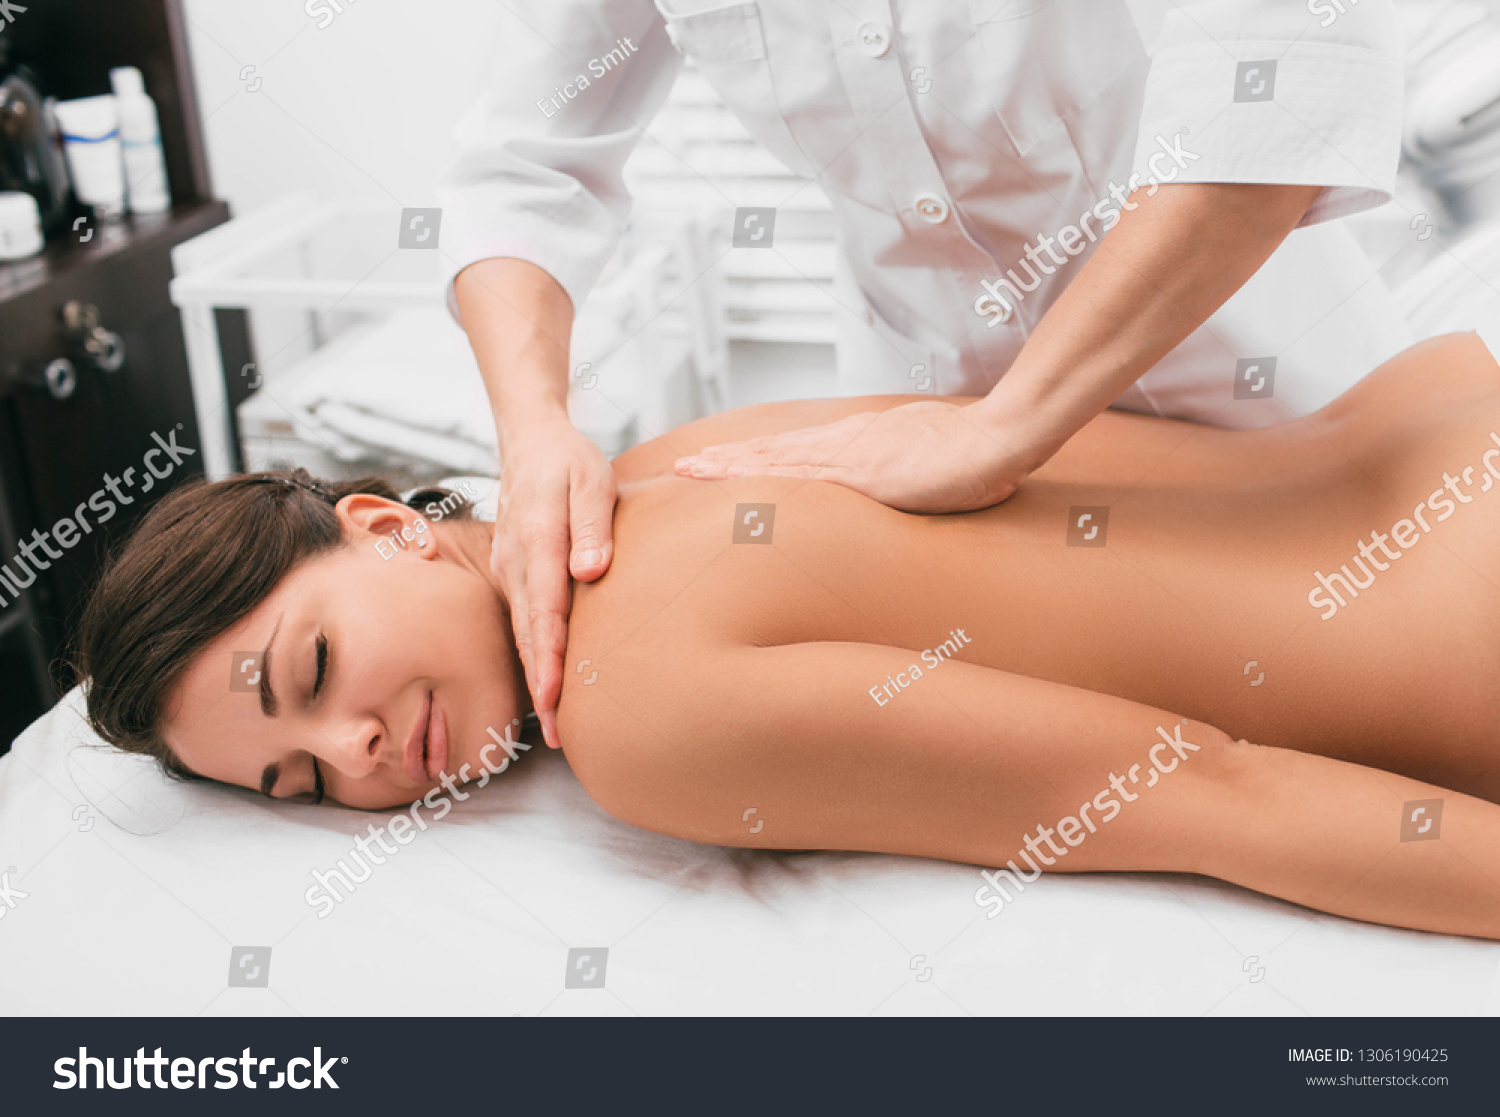 Massage Big Woman